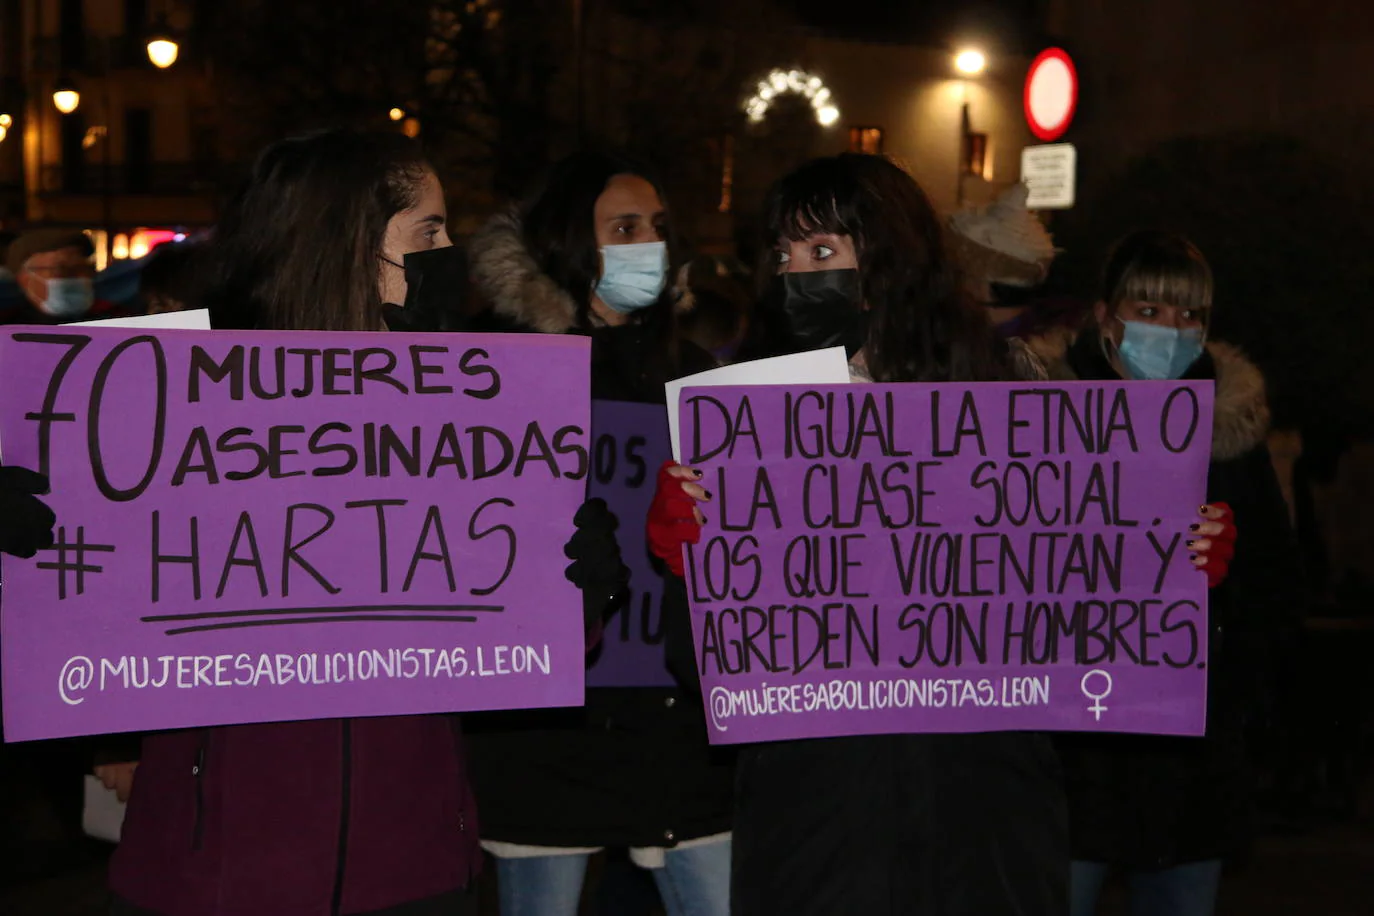 Contra la violencia, mujeres unidas en las calles